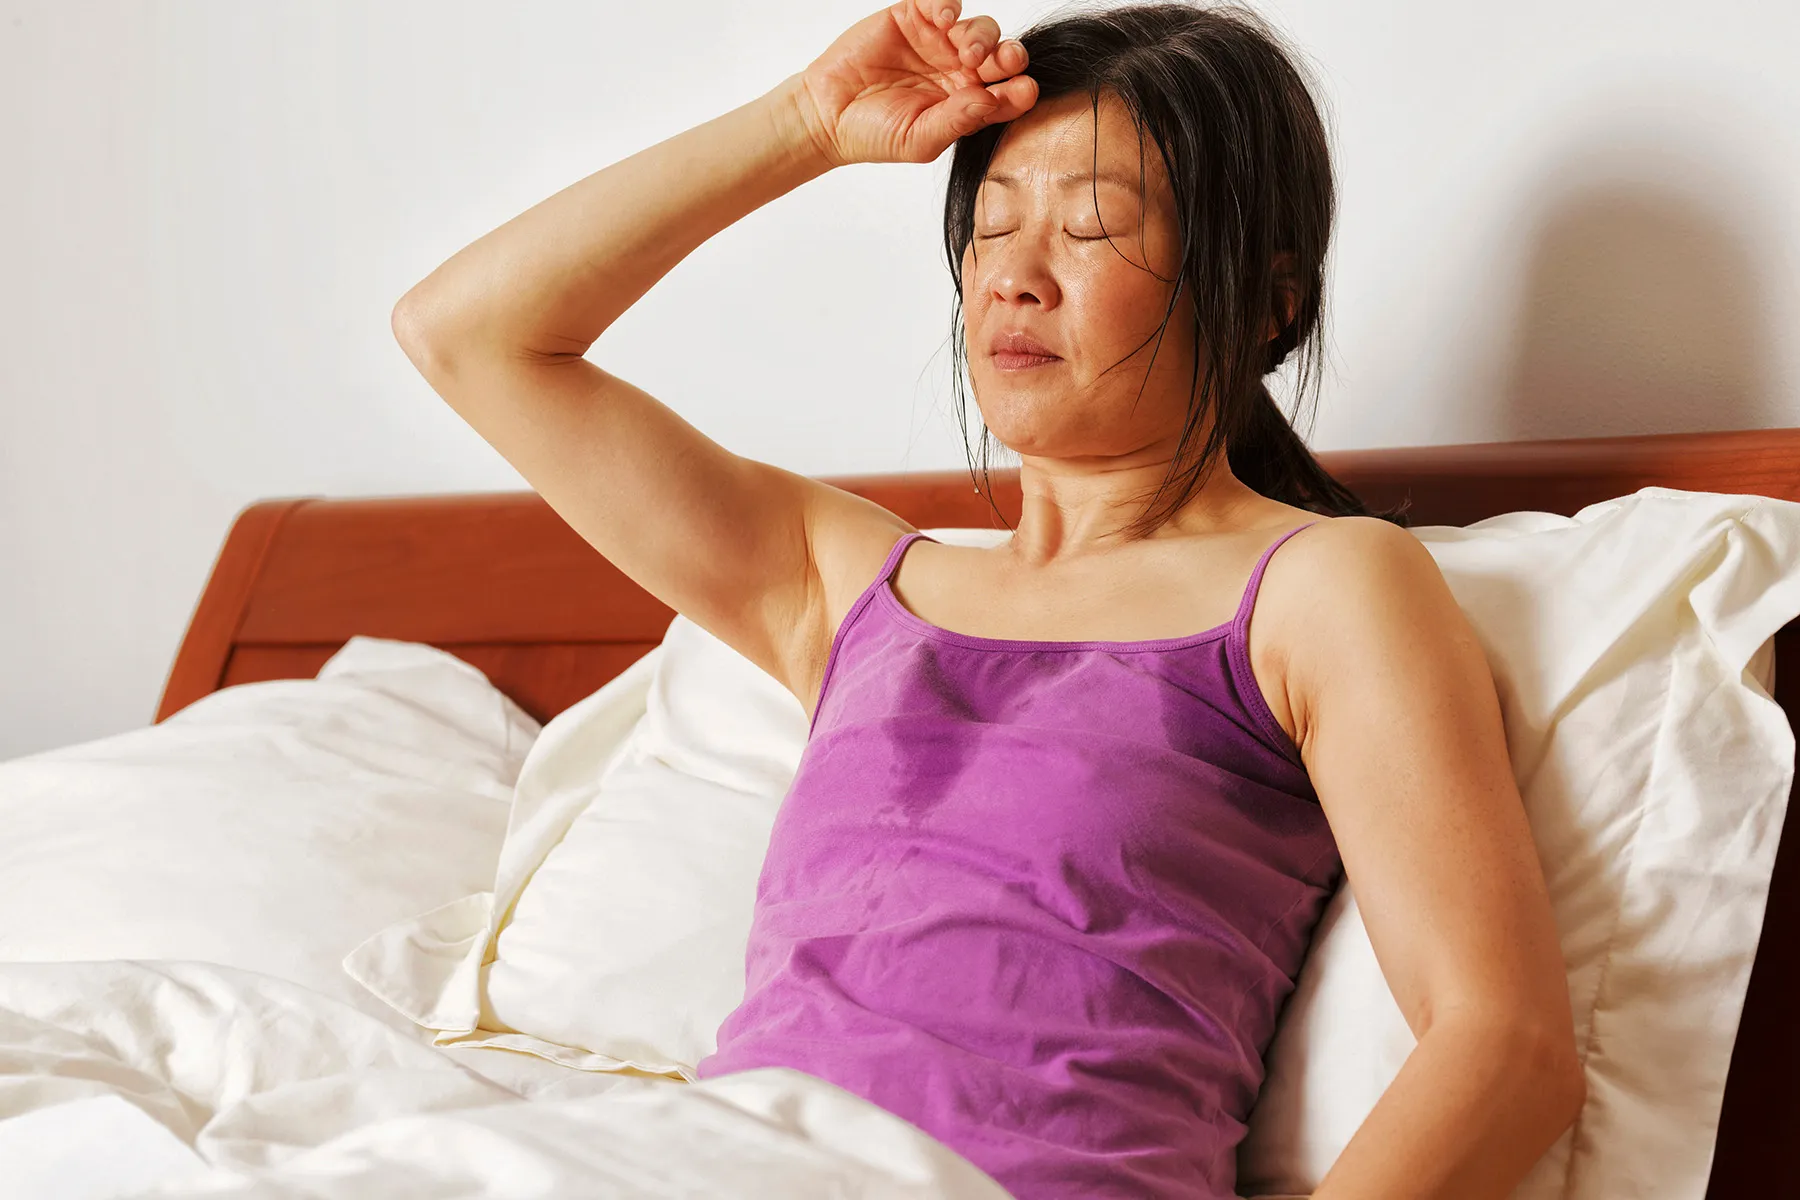 Under-prescribed Menopause Relief: Women Suffer Needlessly